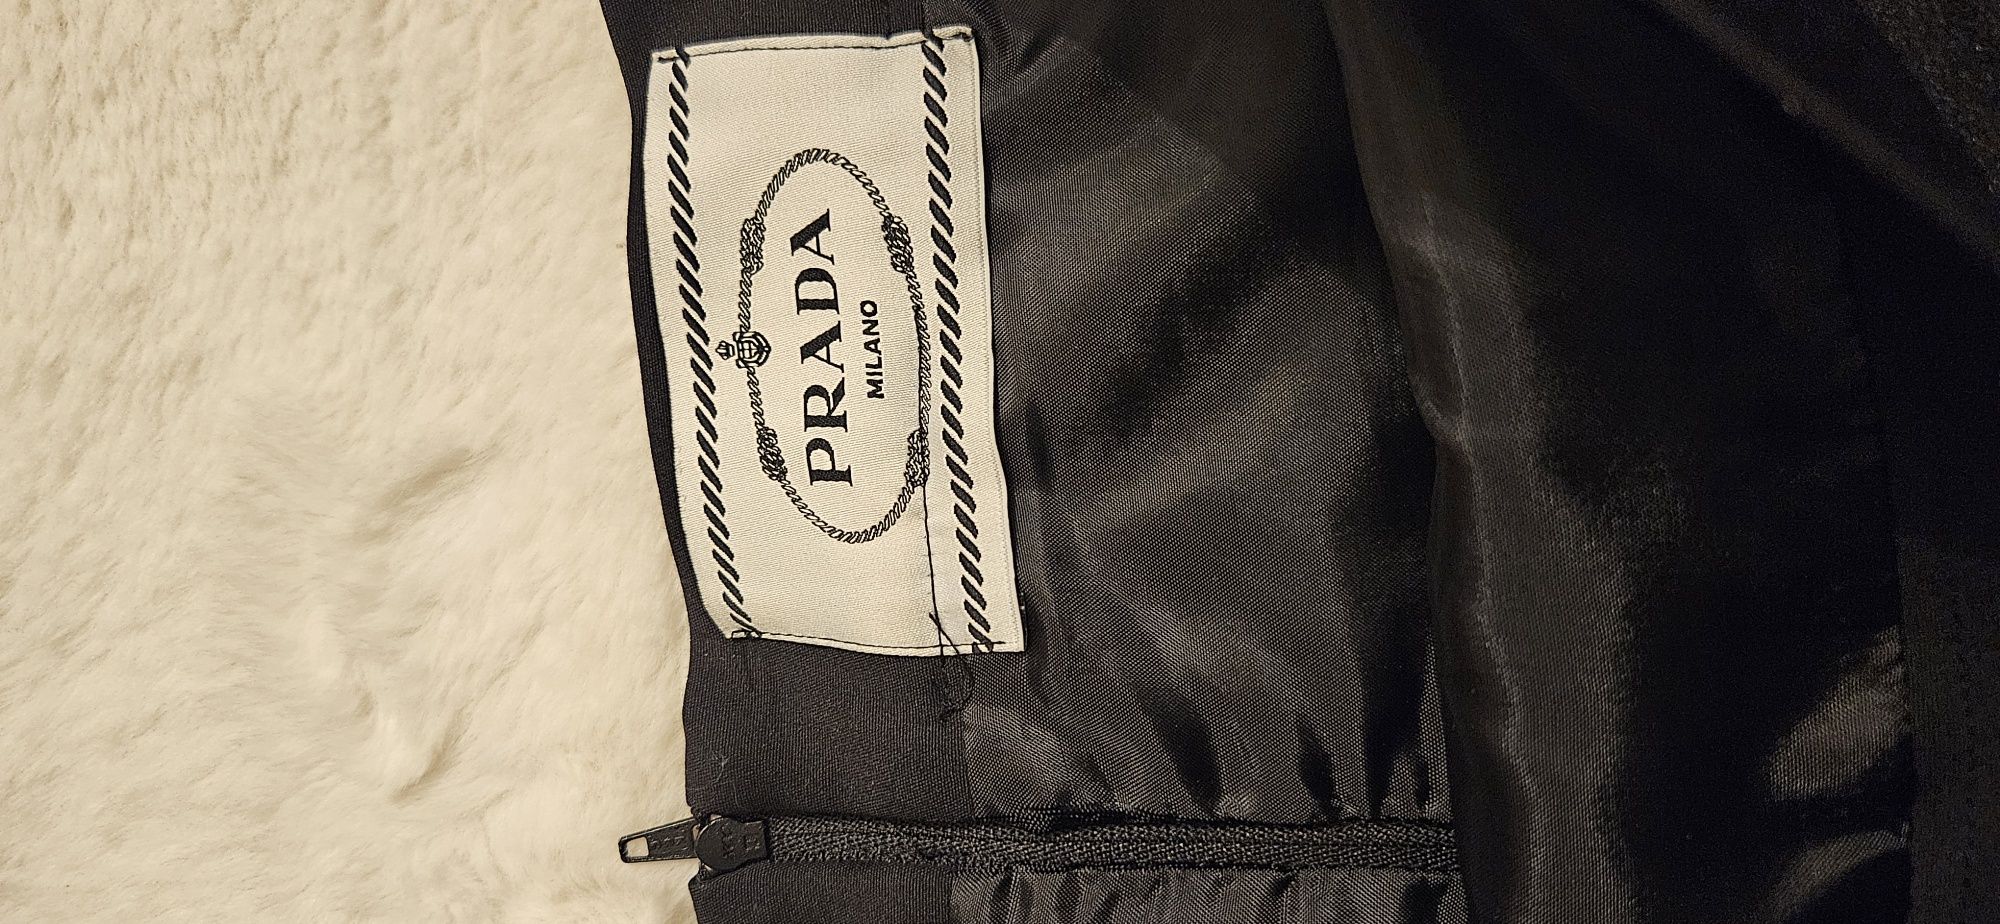 Piękna spódnica czarna firmy Prada